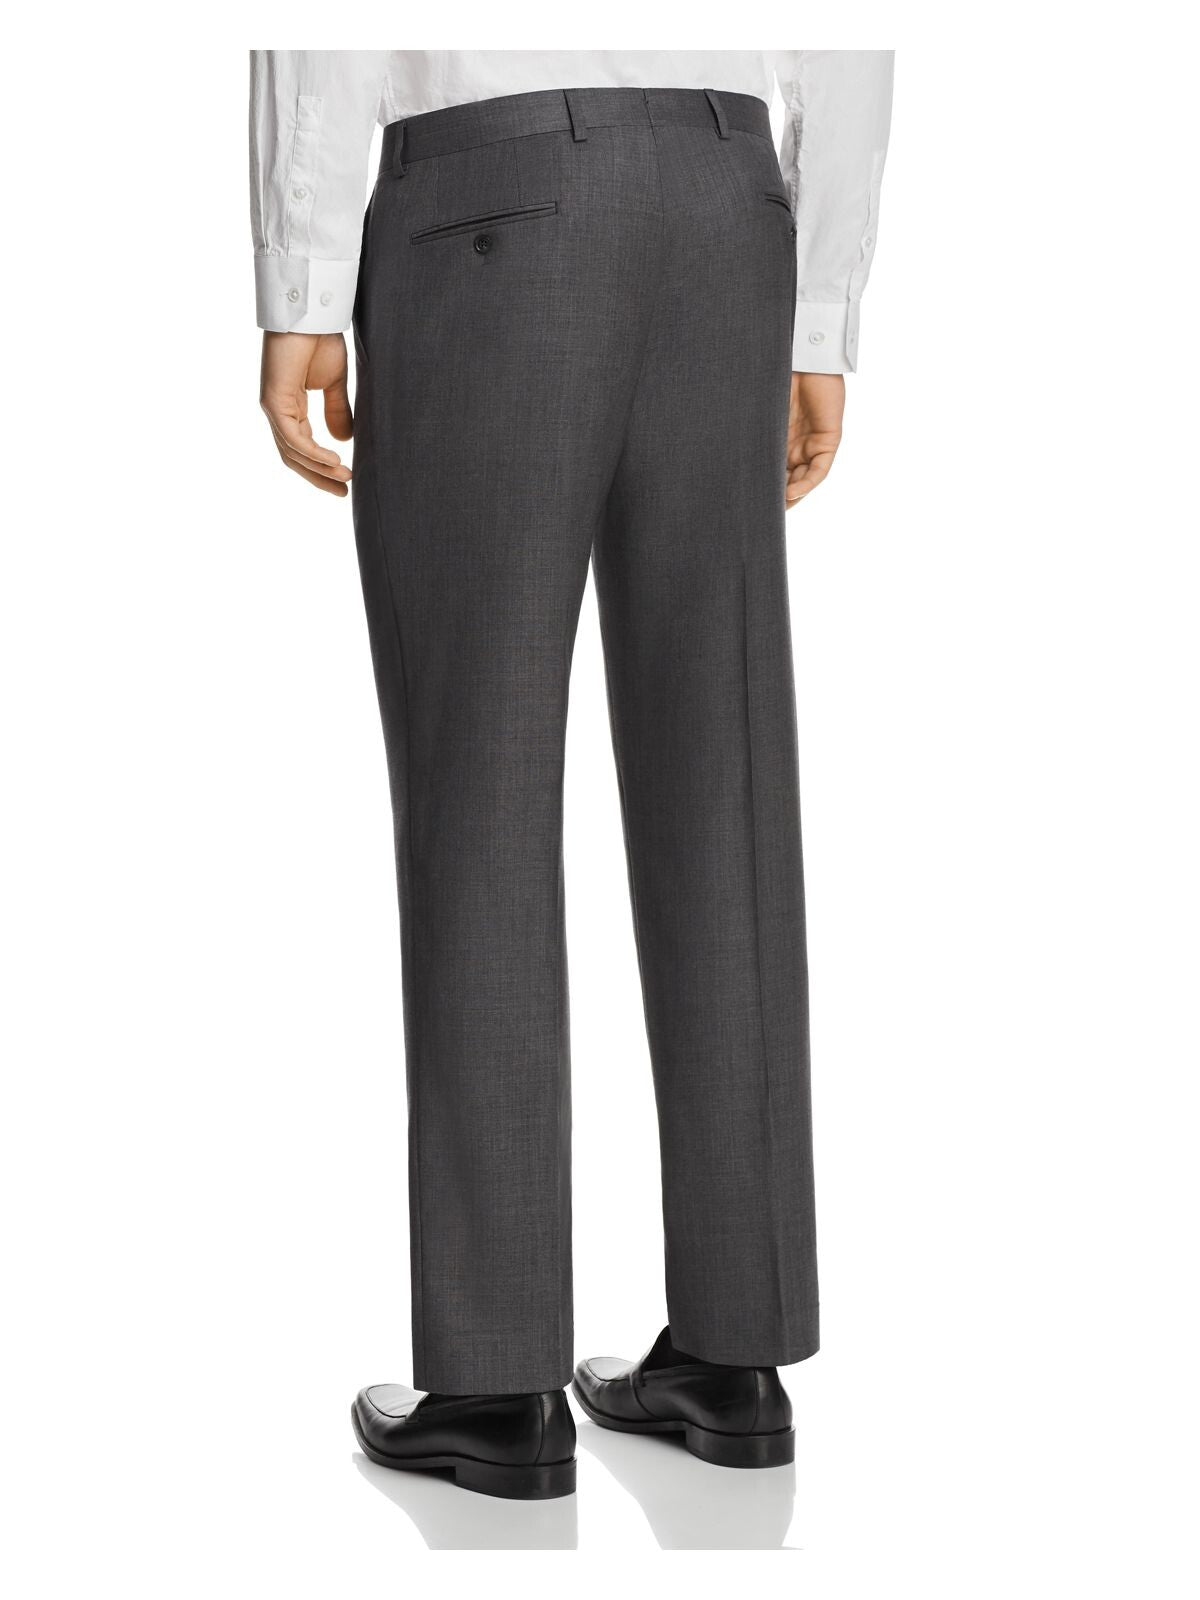 MICHAEL KORS Mens Gray Flat Front, Stretch, Classic Fit Suit Separate Pants 32W X 30L